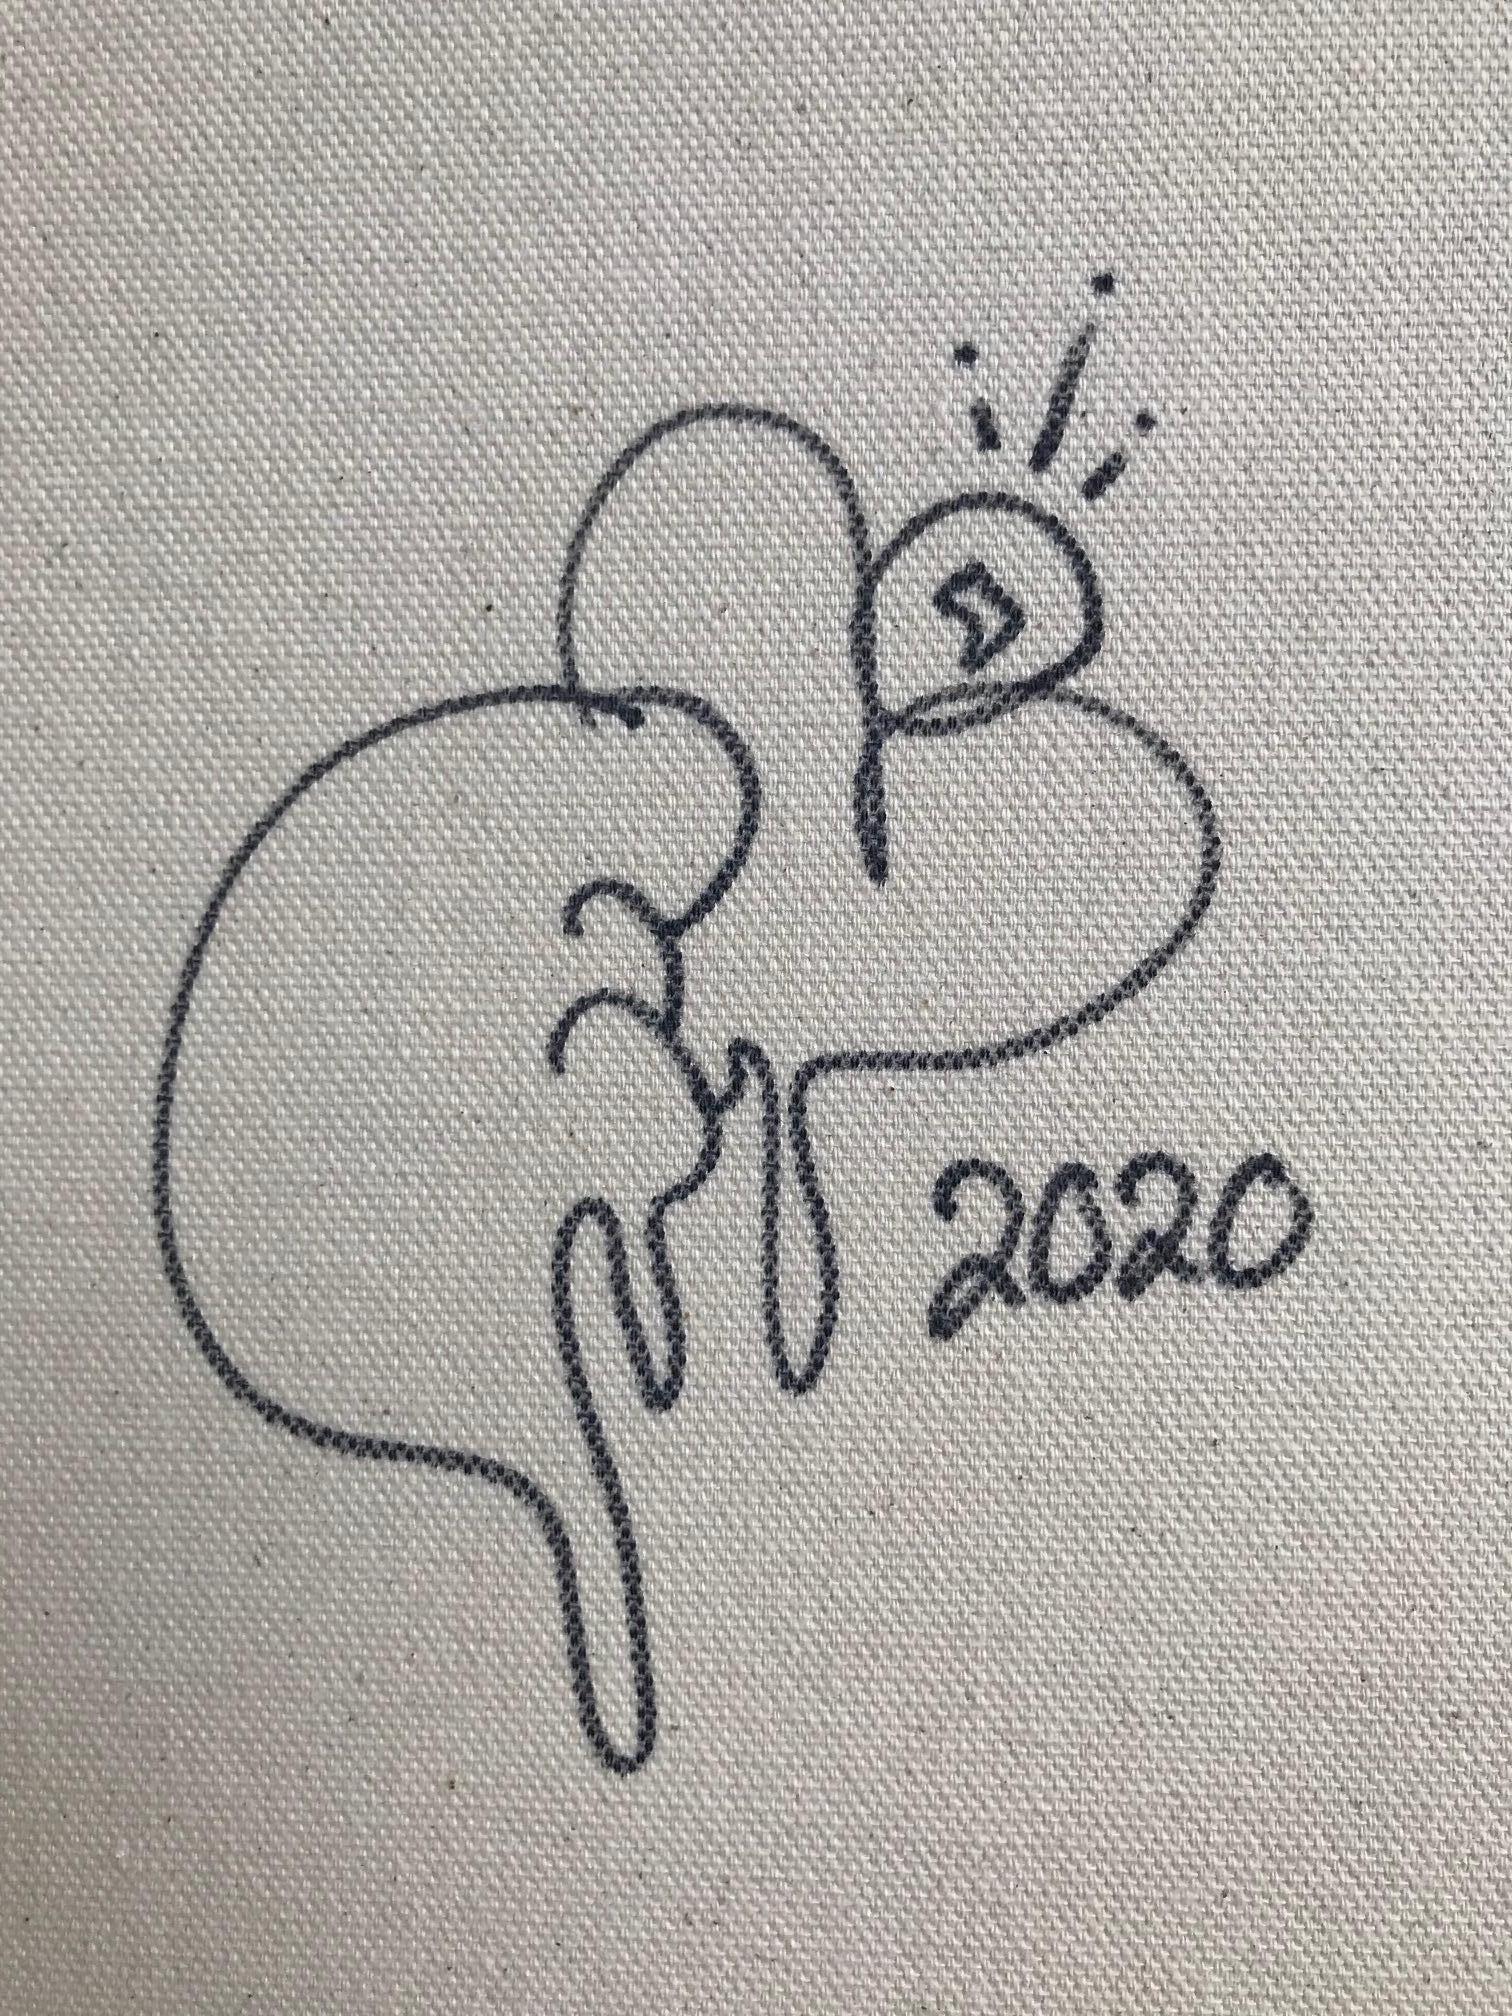 Down Below, 2020
24